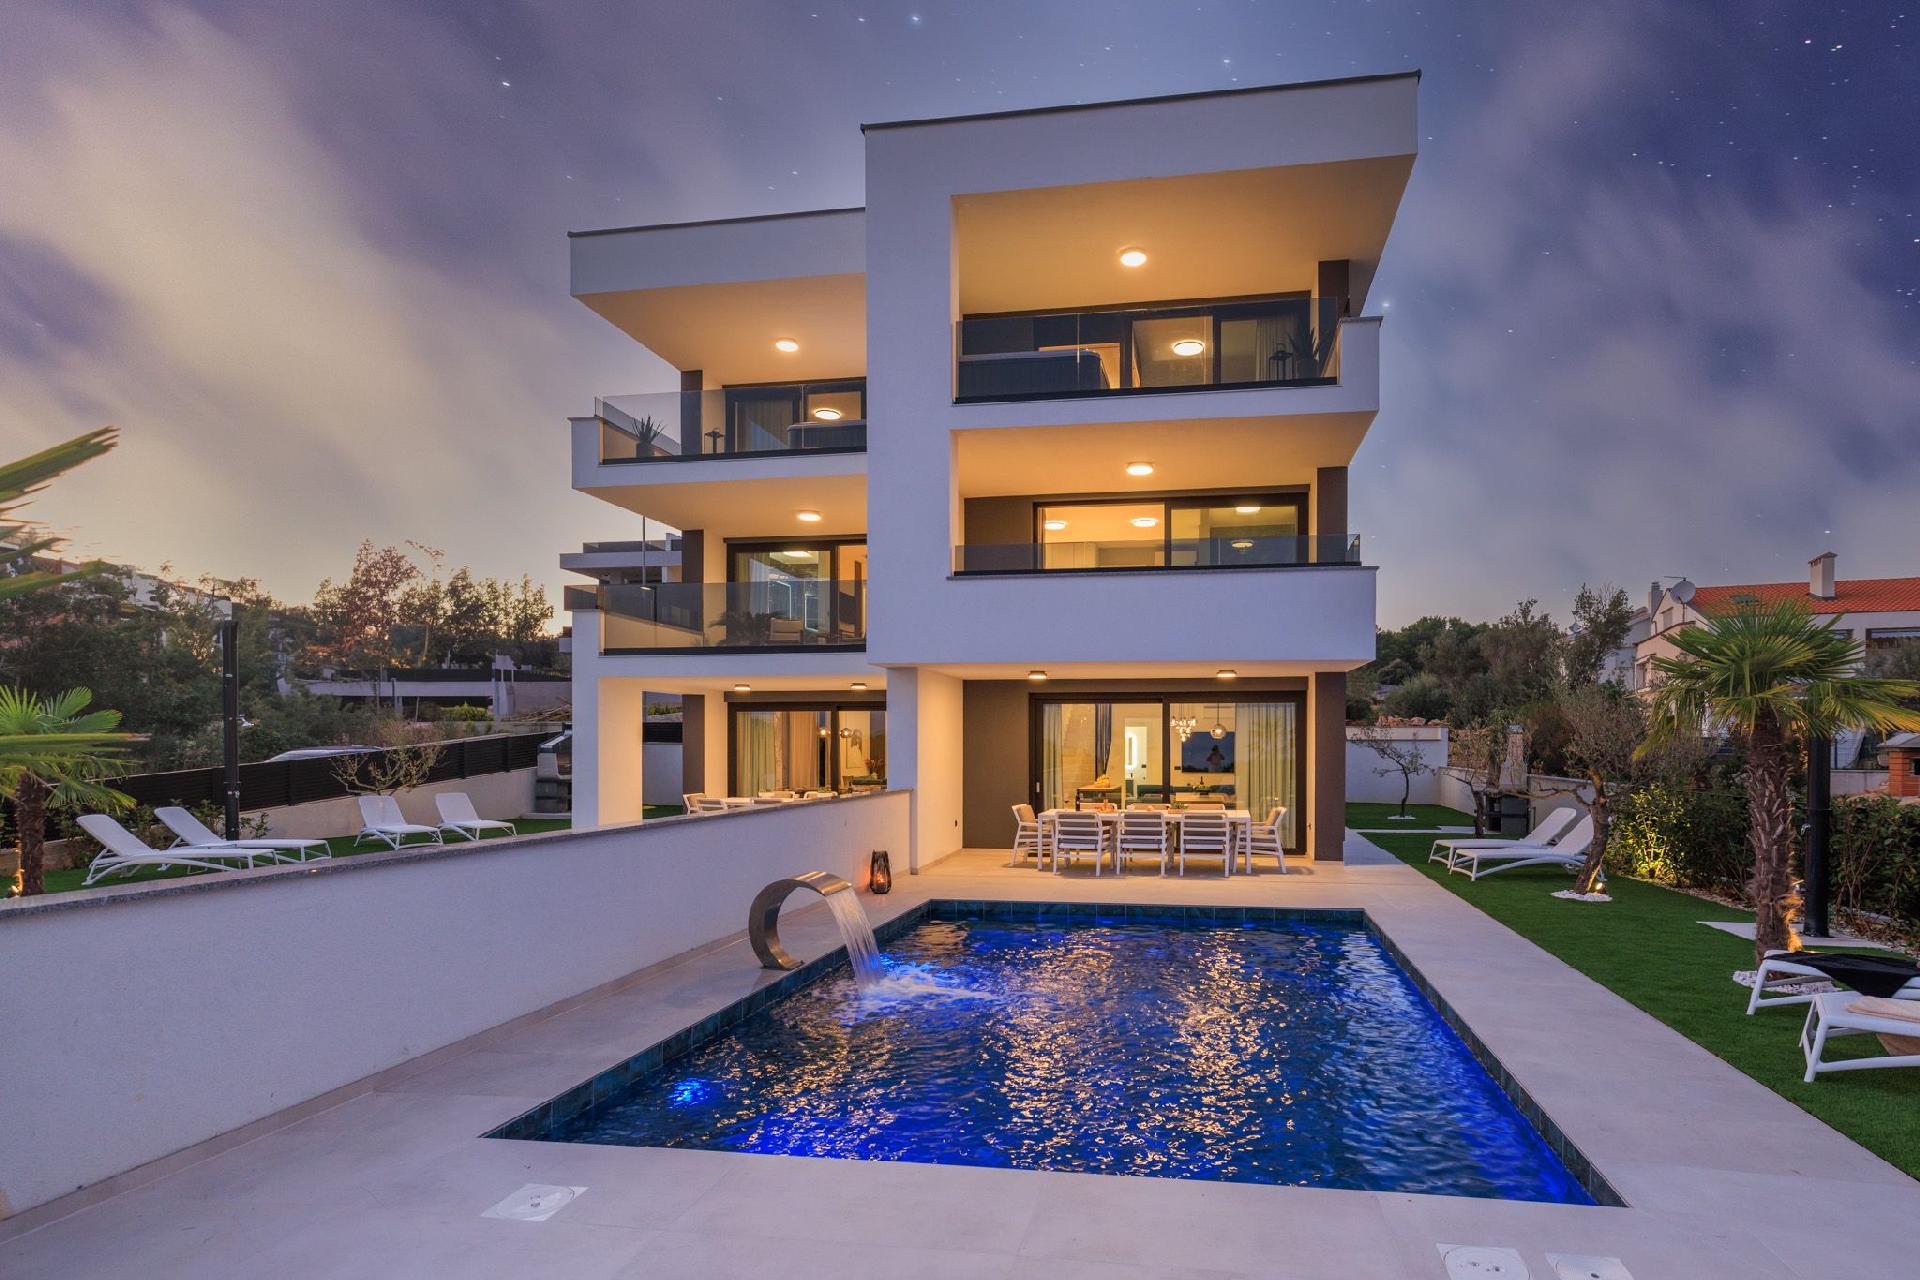 Neue moderne Villa mit Pool in der Nähe von d Ferienhaus  kroatische Inseln